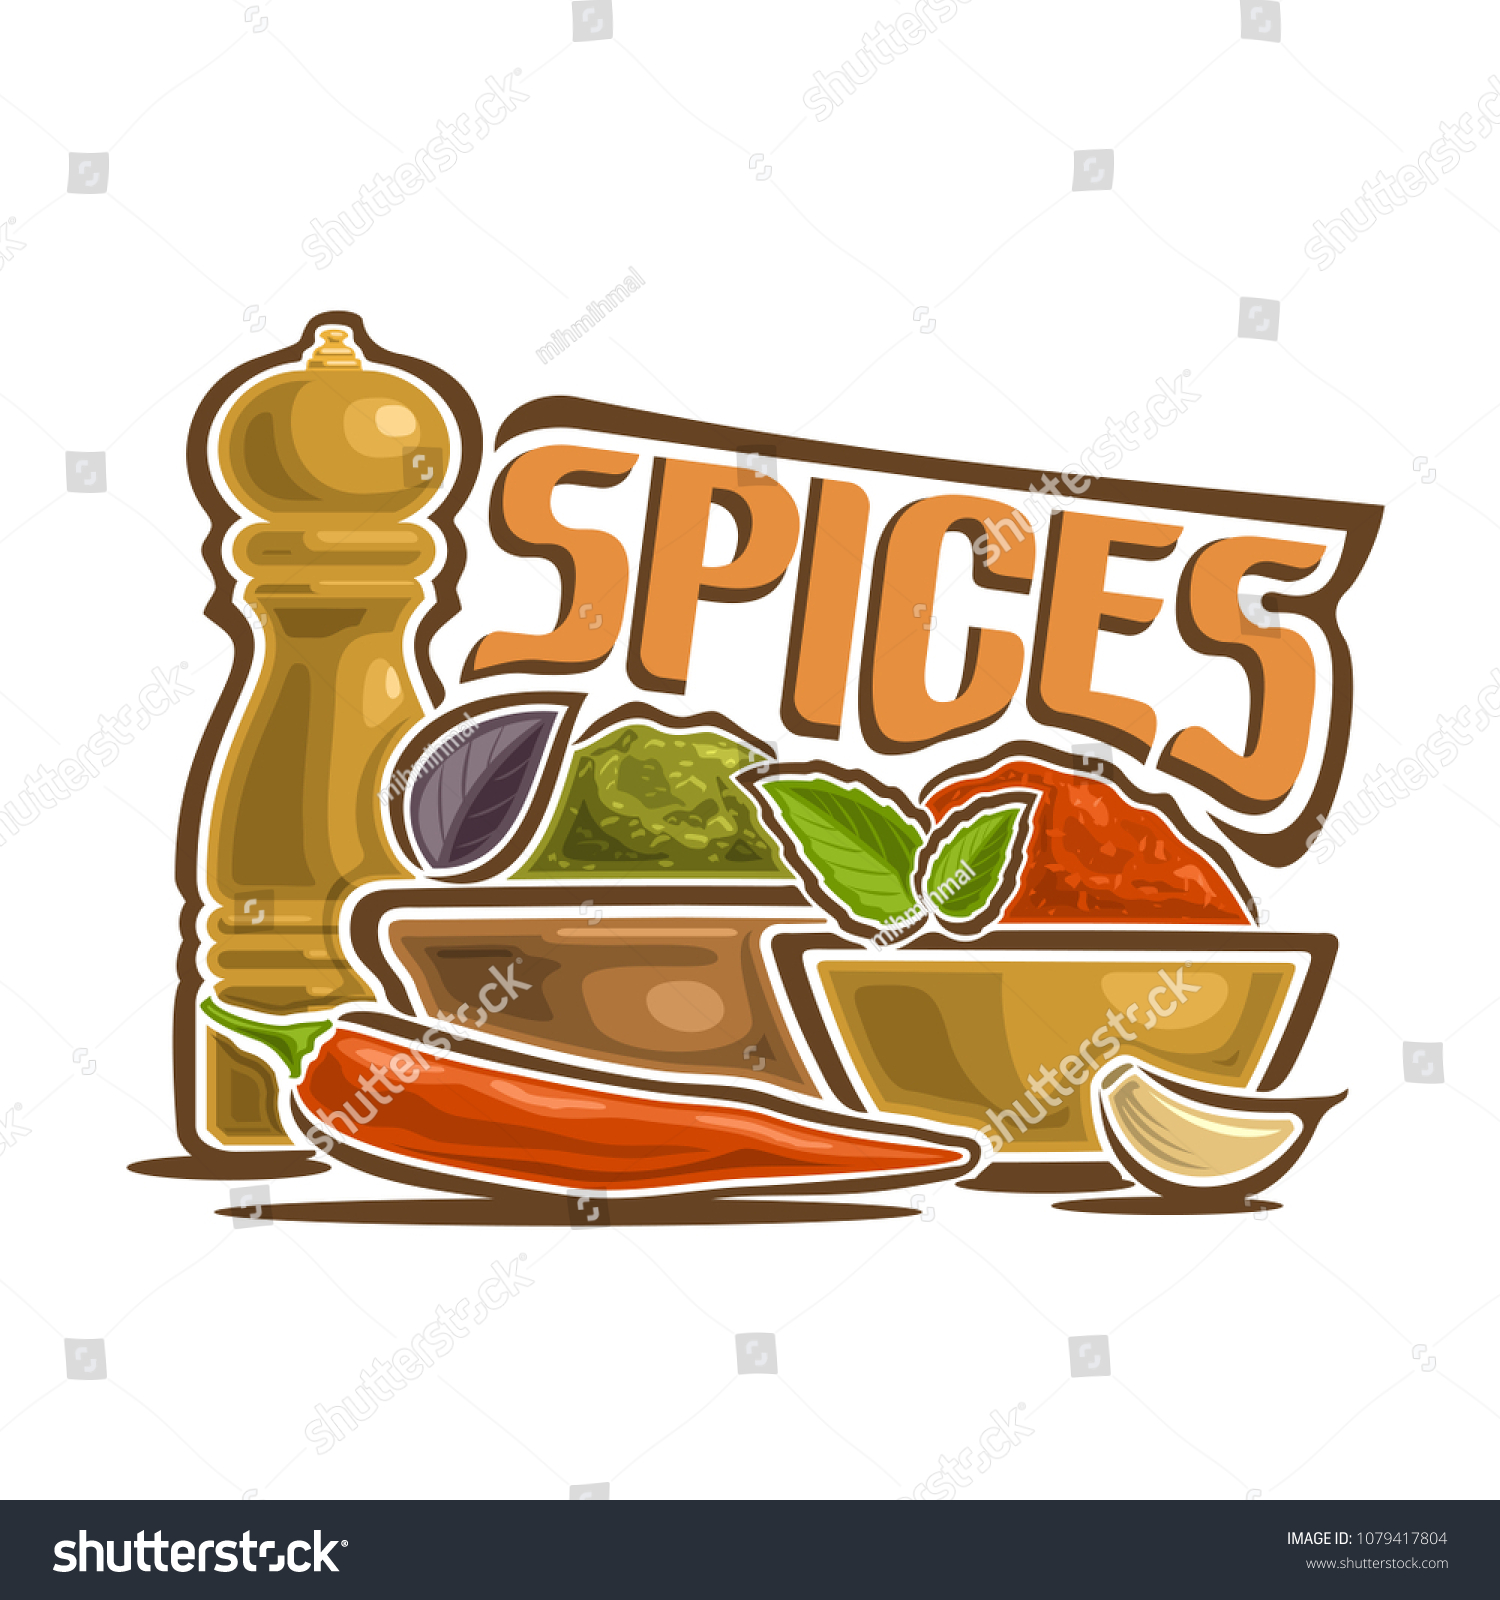 Download Illustration Logo Spices Still Life Mills Stock Illustration 1079417804 PSD Mockup Templates